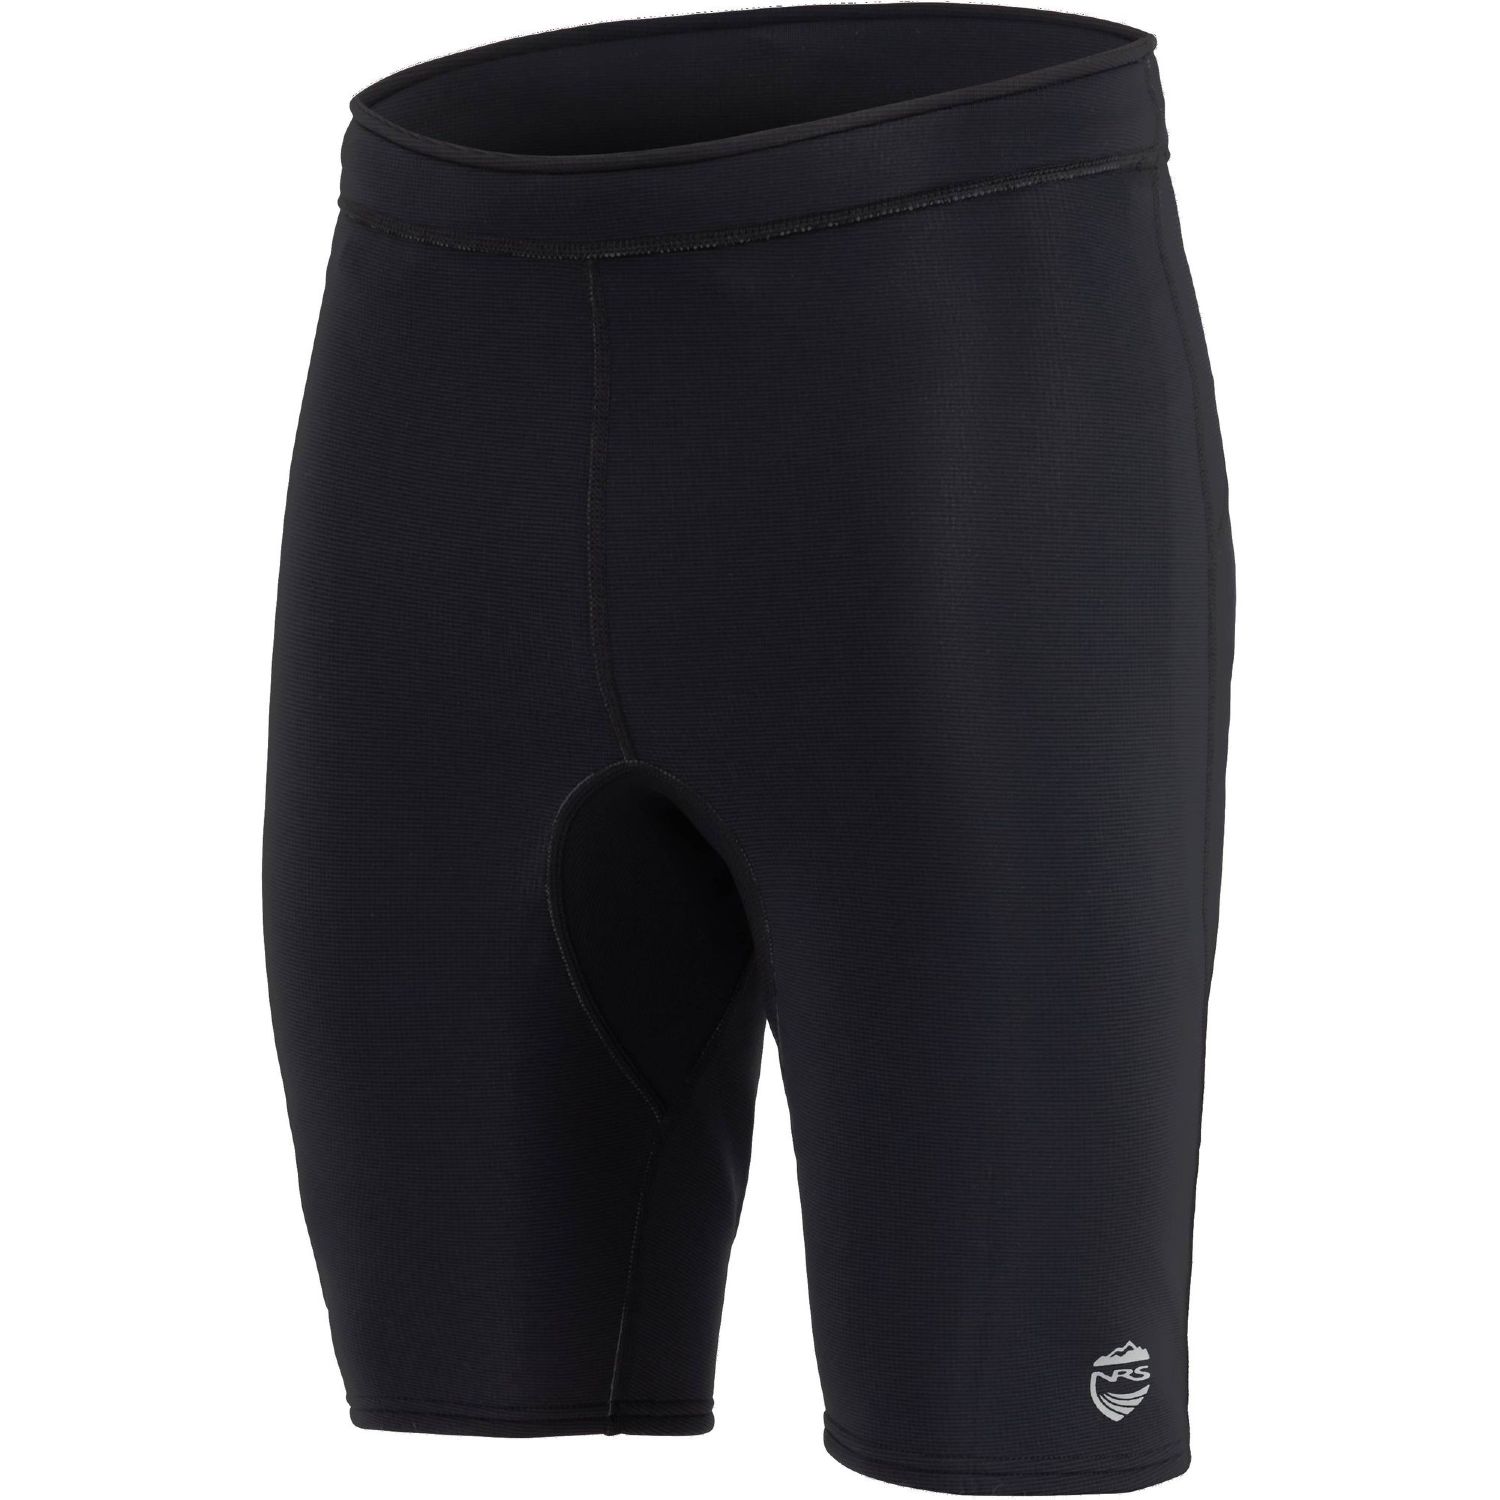 NRS HydroSkin 0.5 Neoprene Shorts, Men's